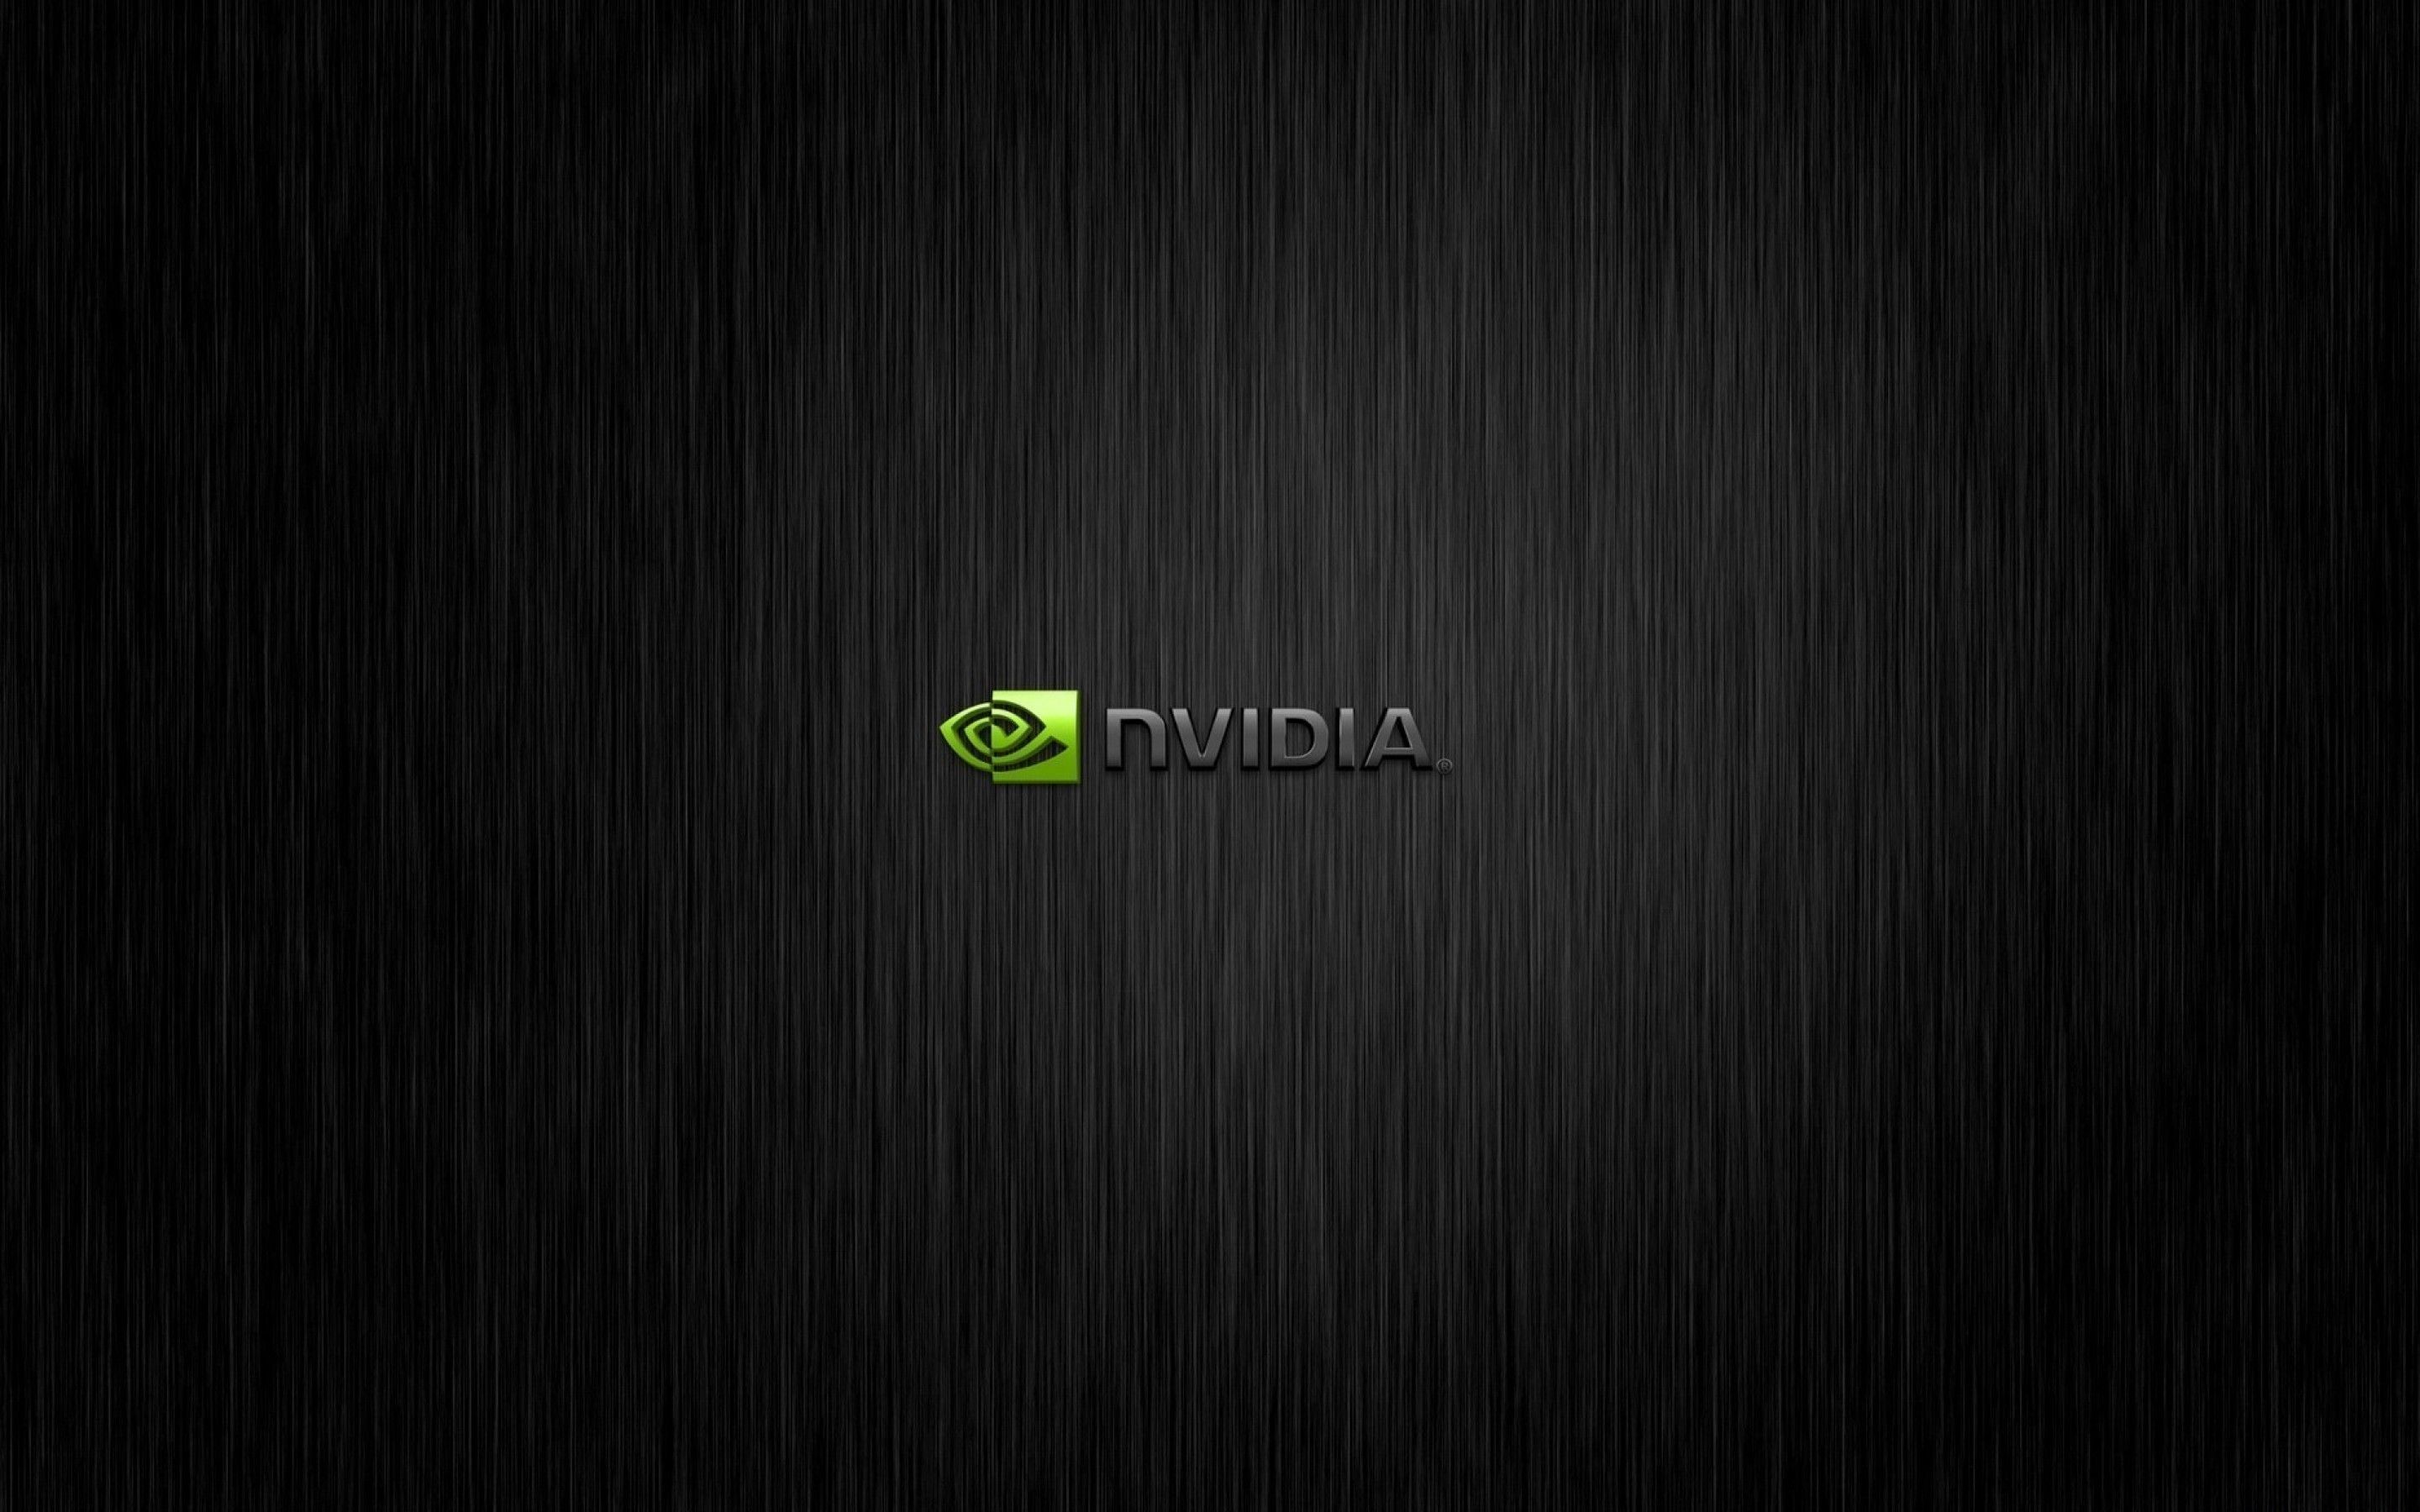 Fonds d'écran Nvidia : tous les wallpapers Nvidia